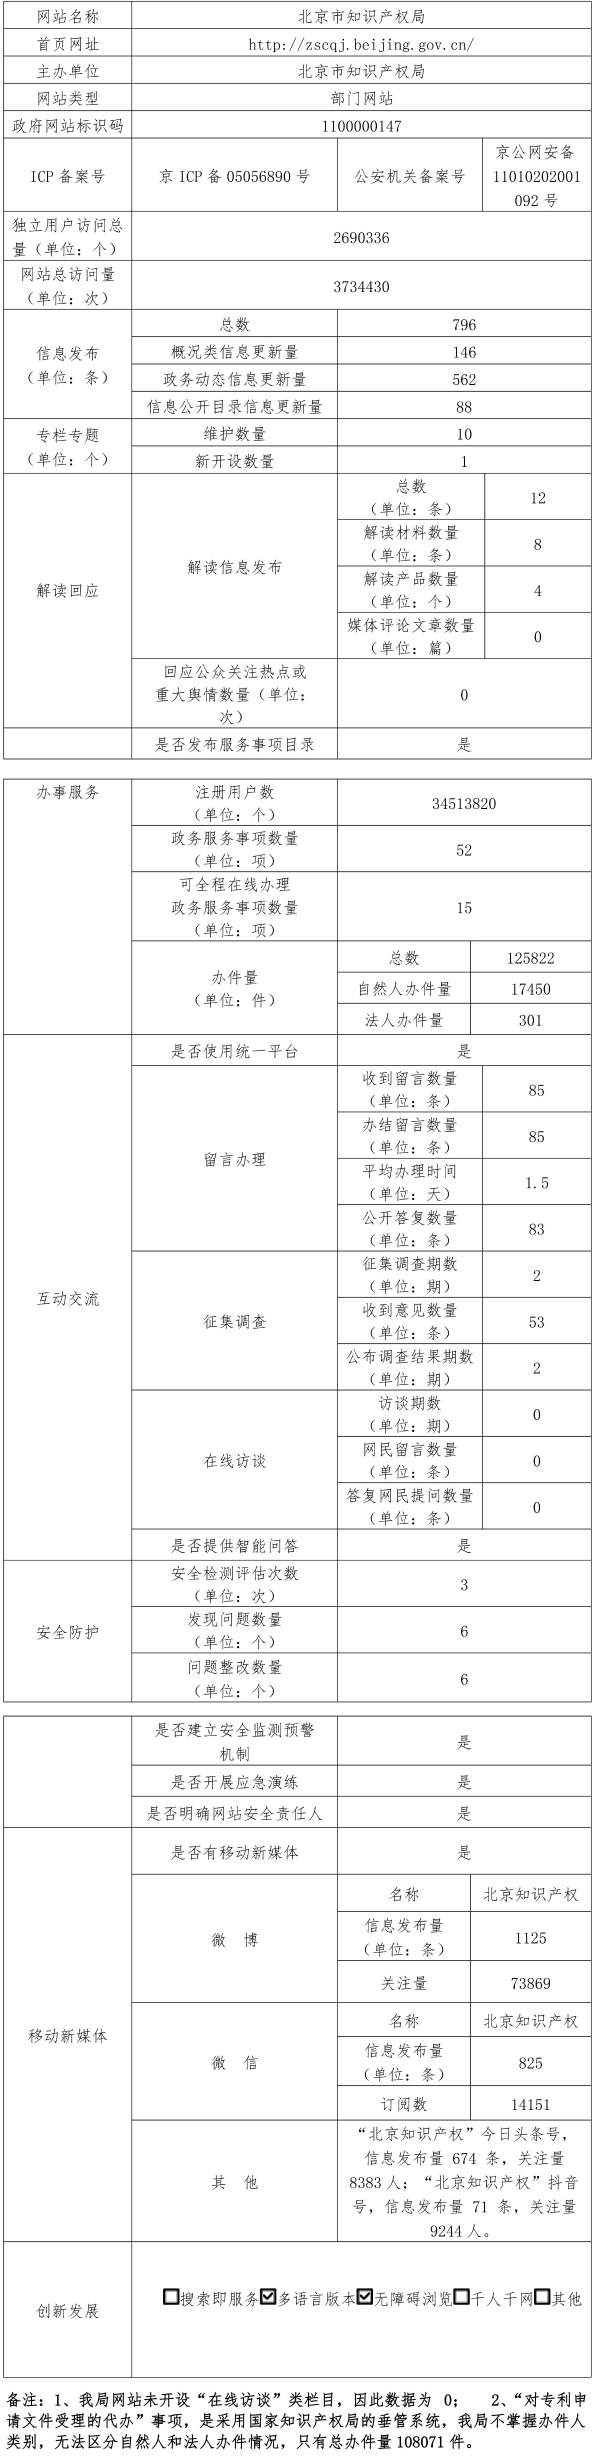 北京市知识产权局2021年政府网站年度工作报表